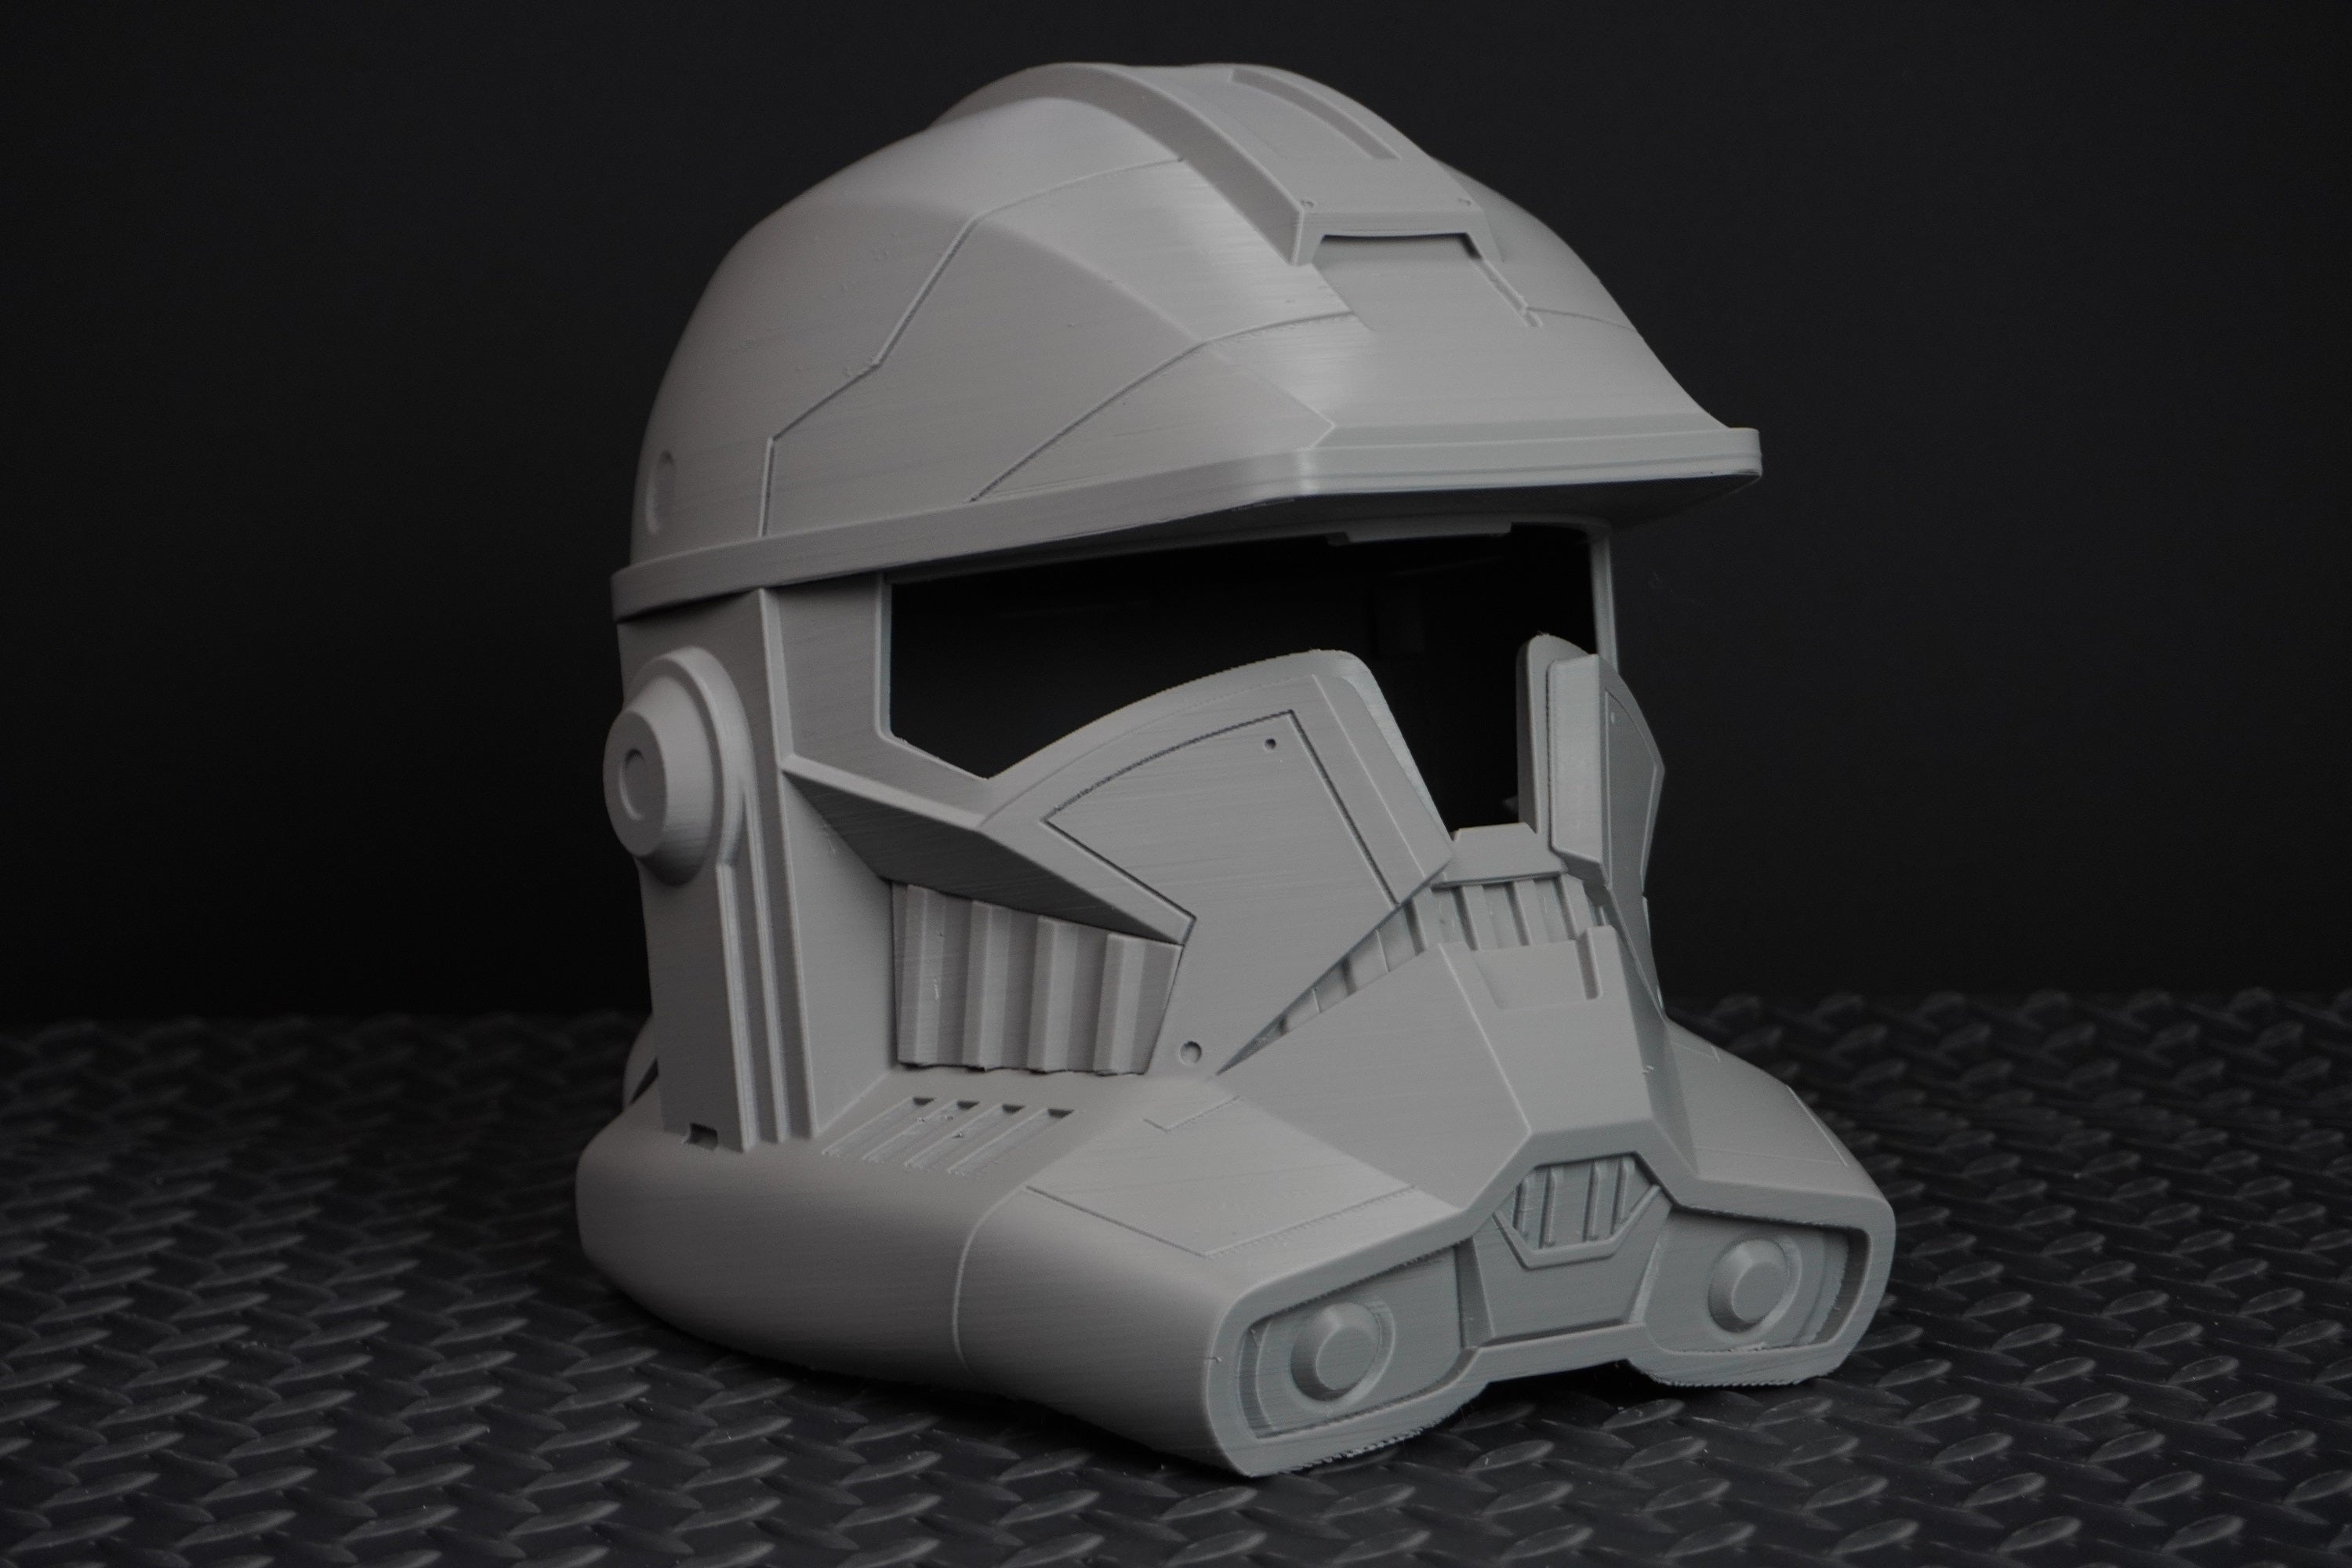 Phase 2 Spartan Helmet - DIY